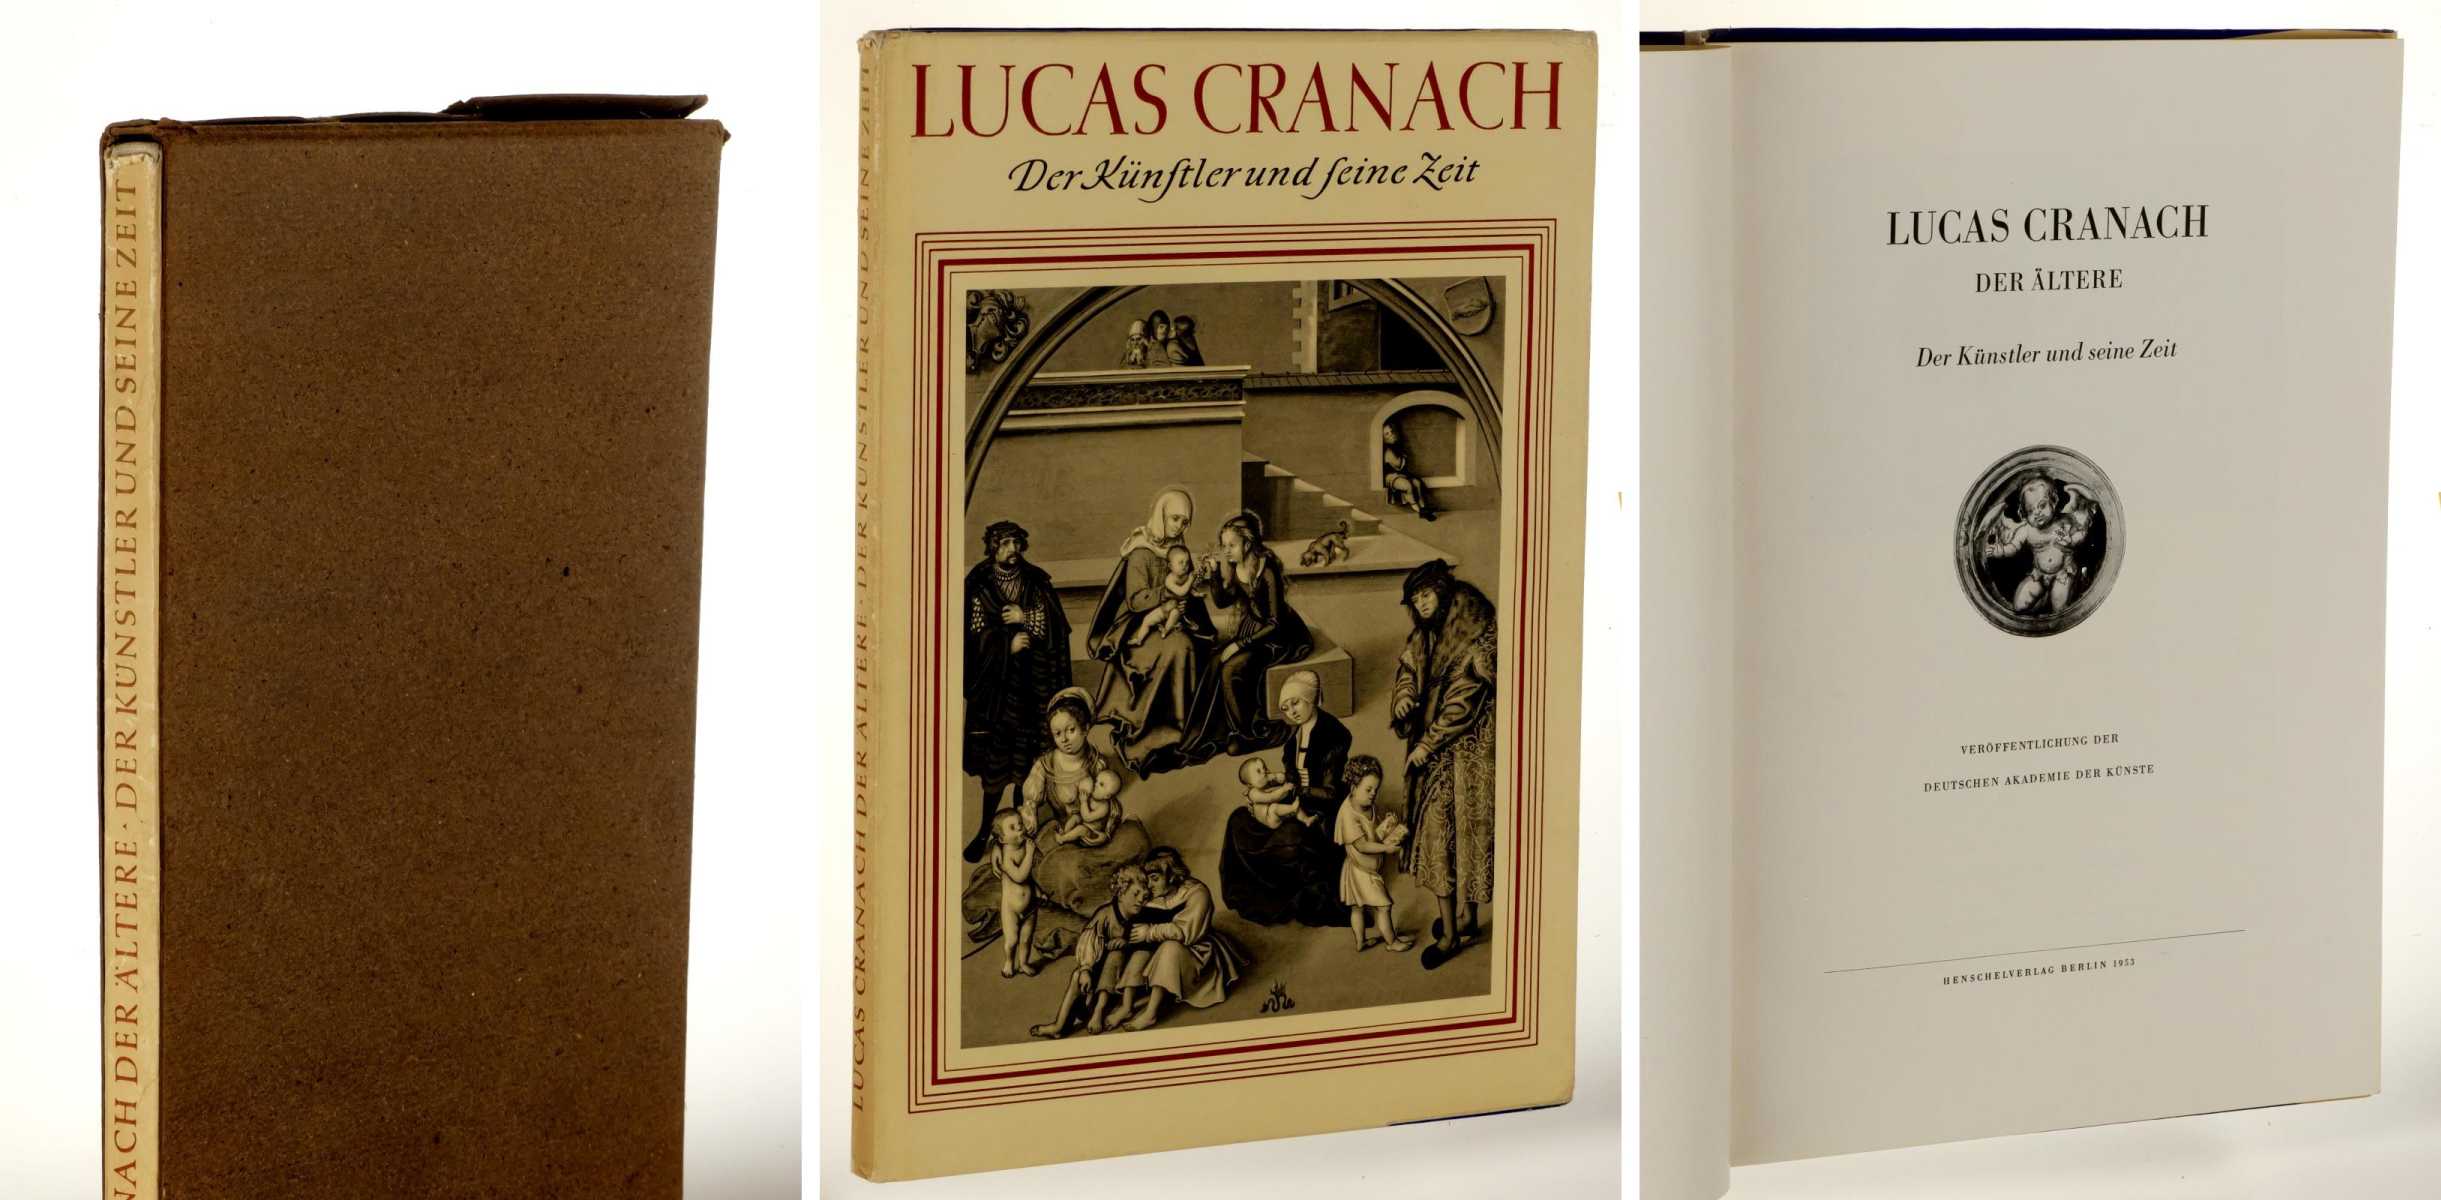   Lucas Cranach der Ältere. Der Künstler und seine Zeit. Veröffentlichung der Deutschen Akademie der Künste. Hrsg. von Heinz Lüdecke. 